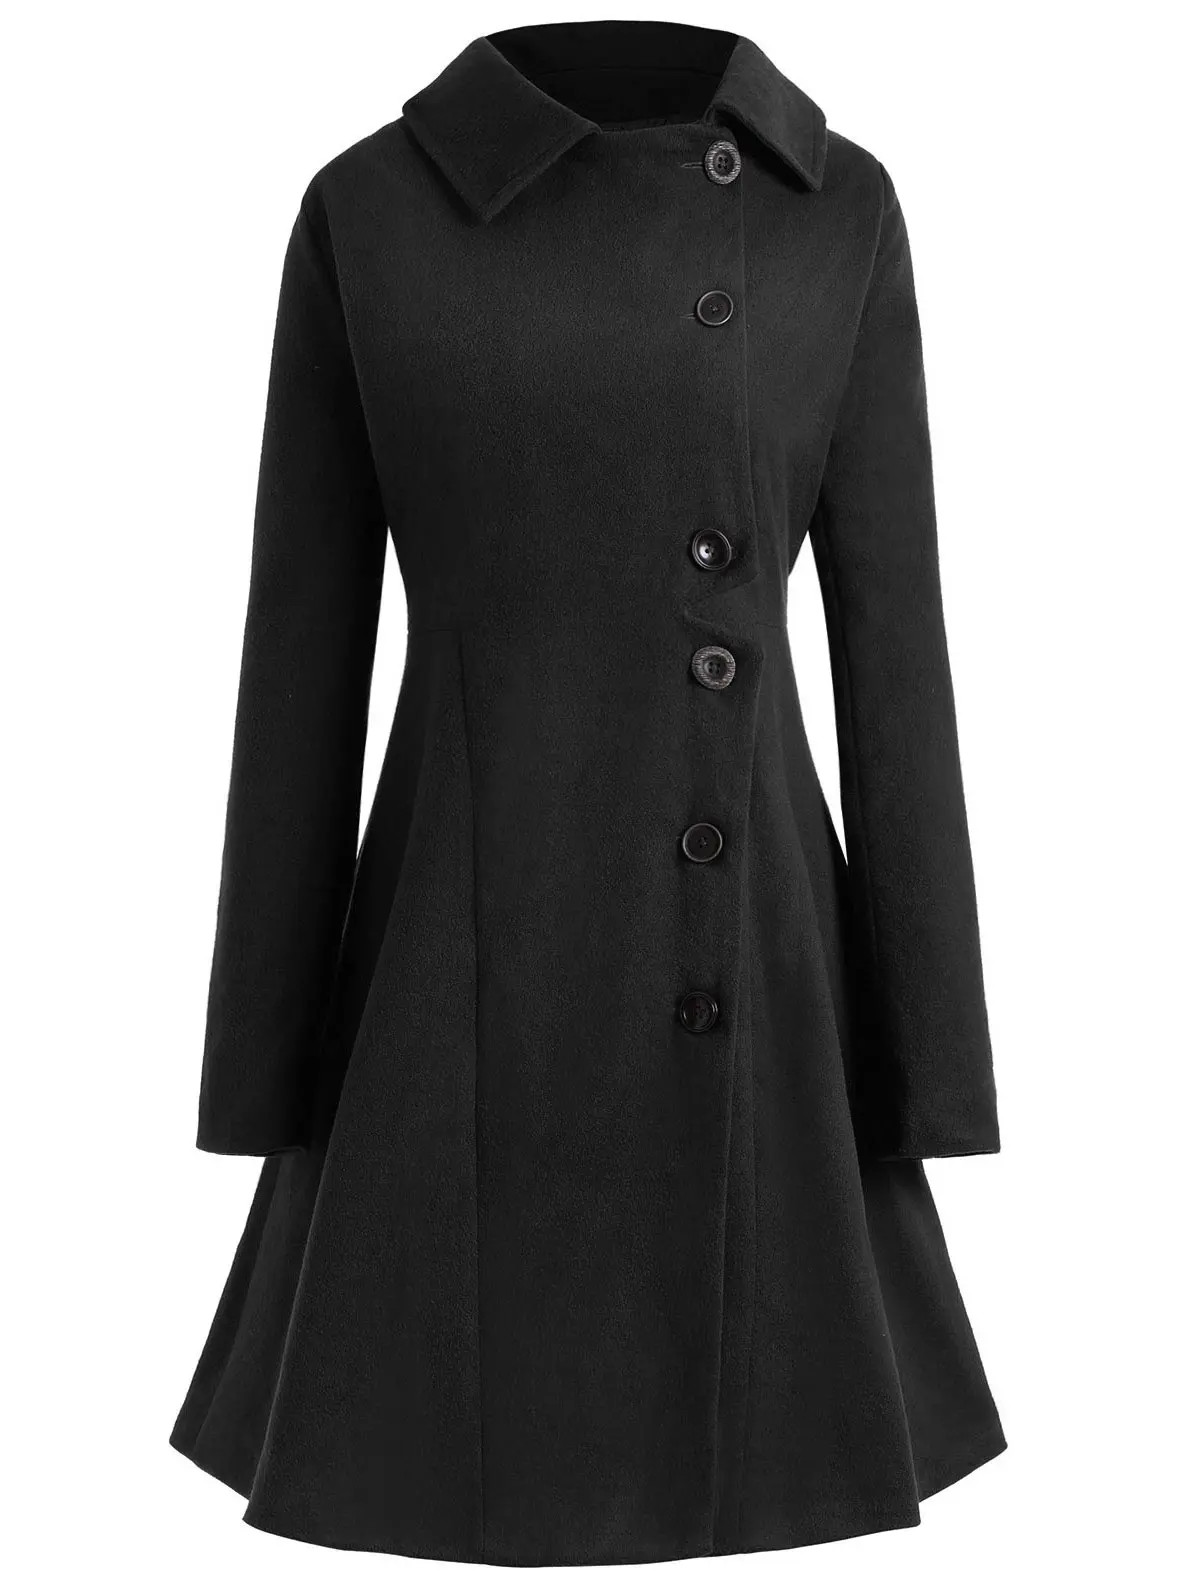 ROSEGAL, пальто размера плюс на пуговицах, женское, для женщин, хлопок, зимняя, длинная куртка, женская верхняя одежда, женская одежда, элегантные пальто